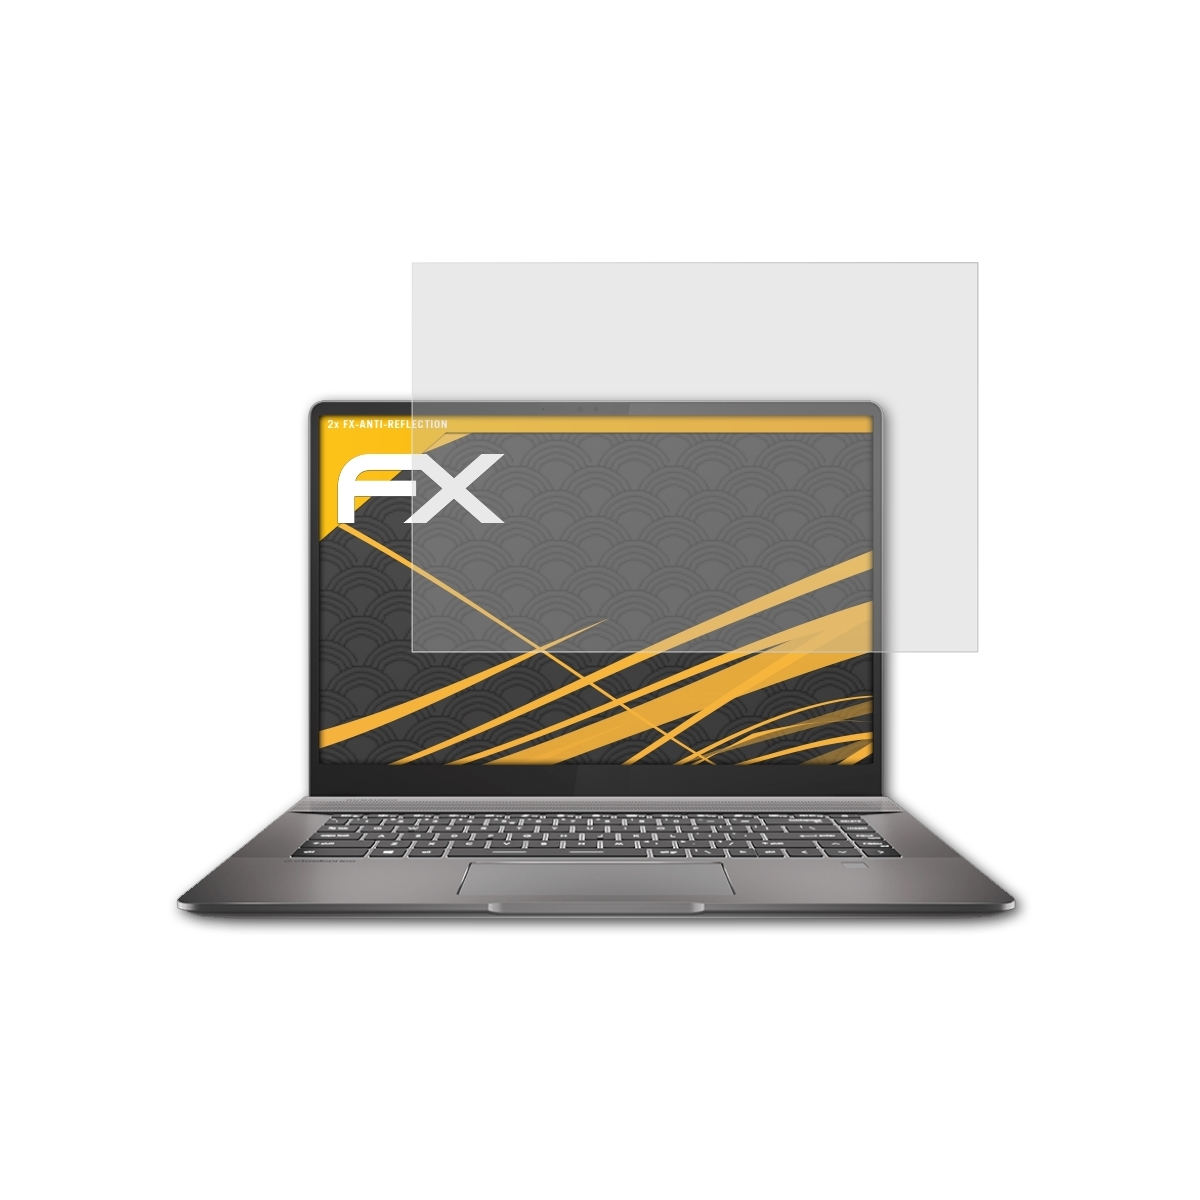 ATFOLIX 2x FX-Antireflex MSI Displayschutz(für Z16) Creator